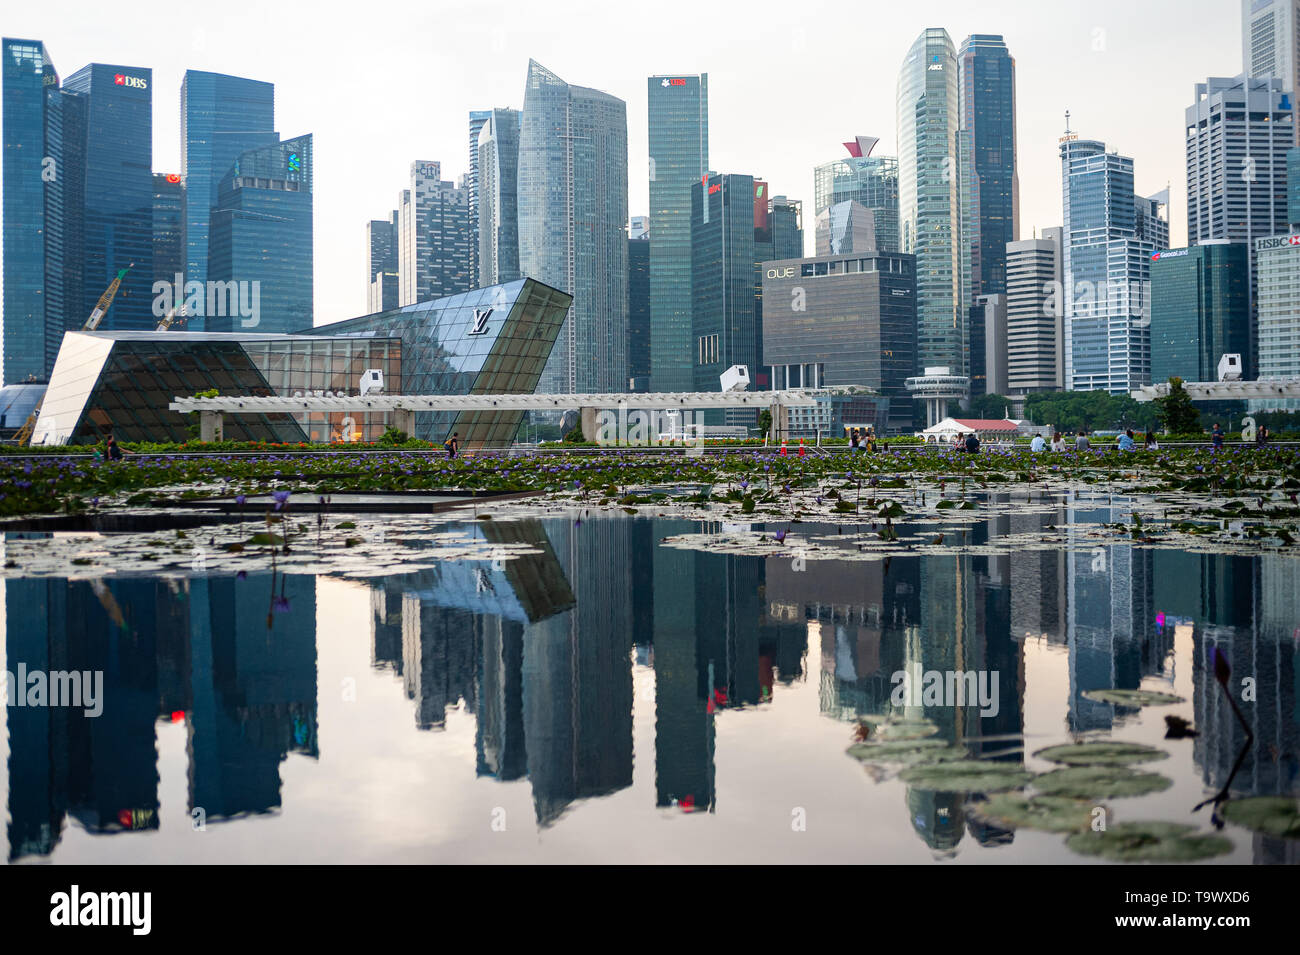 10.05.2019, Singapur, Republik Singapur, Asien - ein Blick auf die Skyline des Central Business District in der Marina Bay. Stockfoto